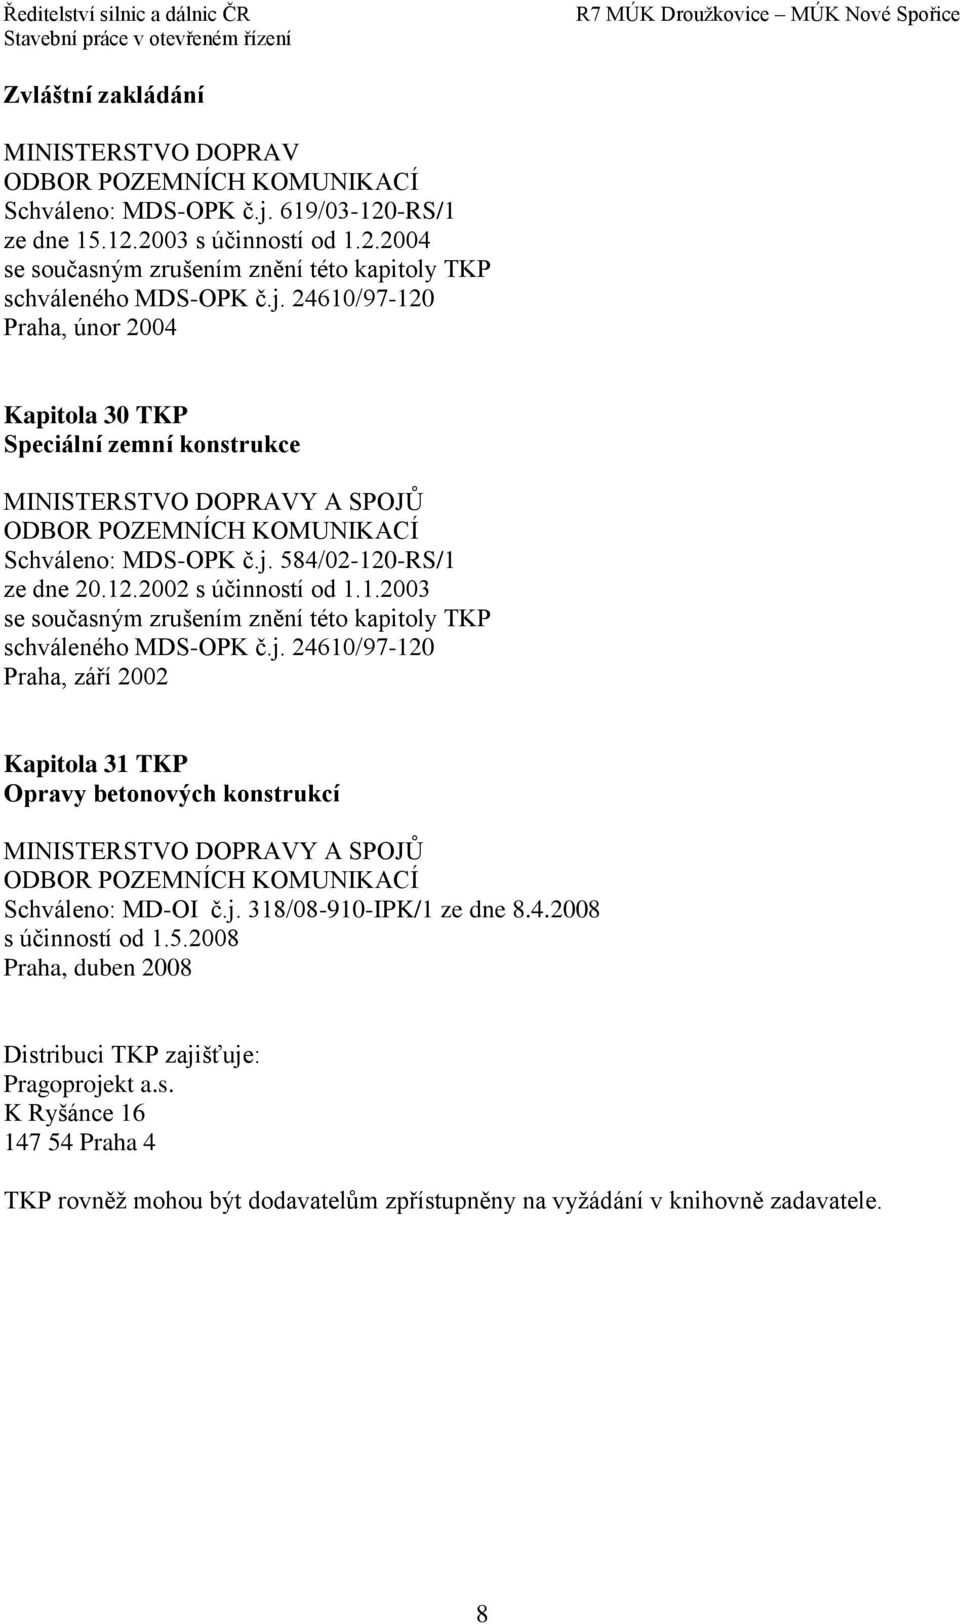 j. 318/08-910-IPK/1 ze dne 8.4.2008 s účinností od 1.5.2008 Praha, duben 2008 Distribuci TKP zajišťuje: Pragoprojekt a.s. K Ryšánce 16 147 54 Praha 4 TKP rovněž mohou být dodavatelům zpřístupněny na vyžádání v knihovně zadavatele.